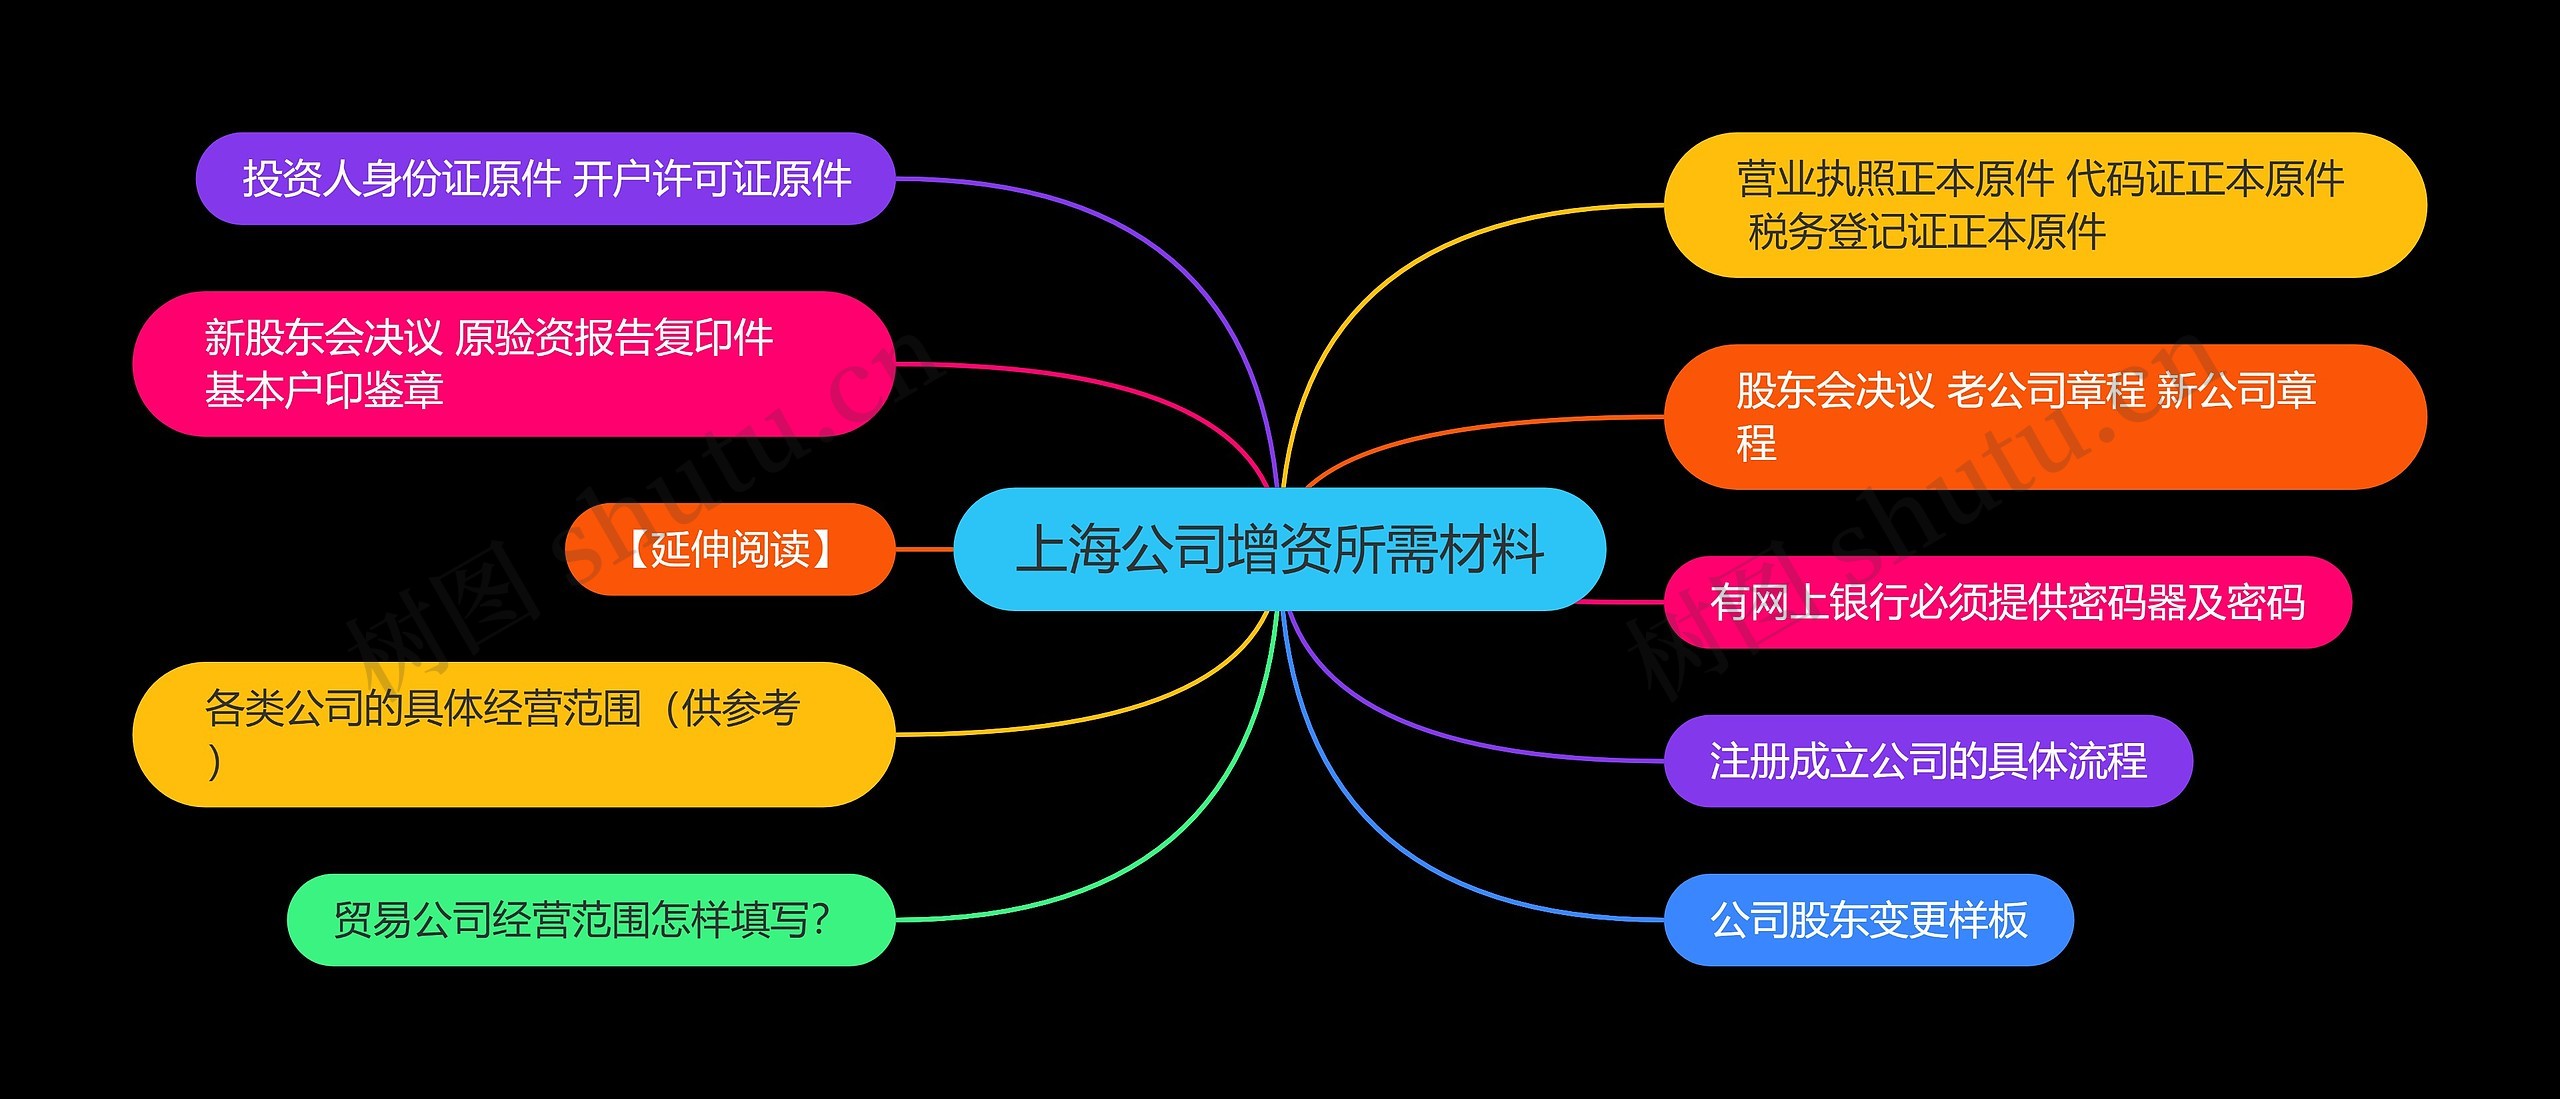 上海公司增资所需材料思维导图